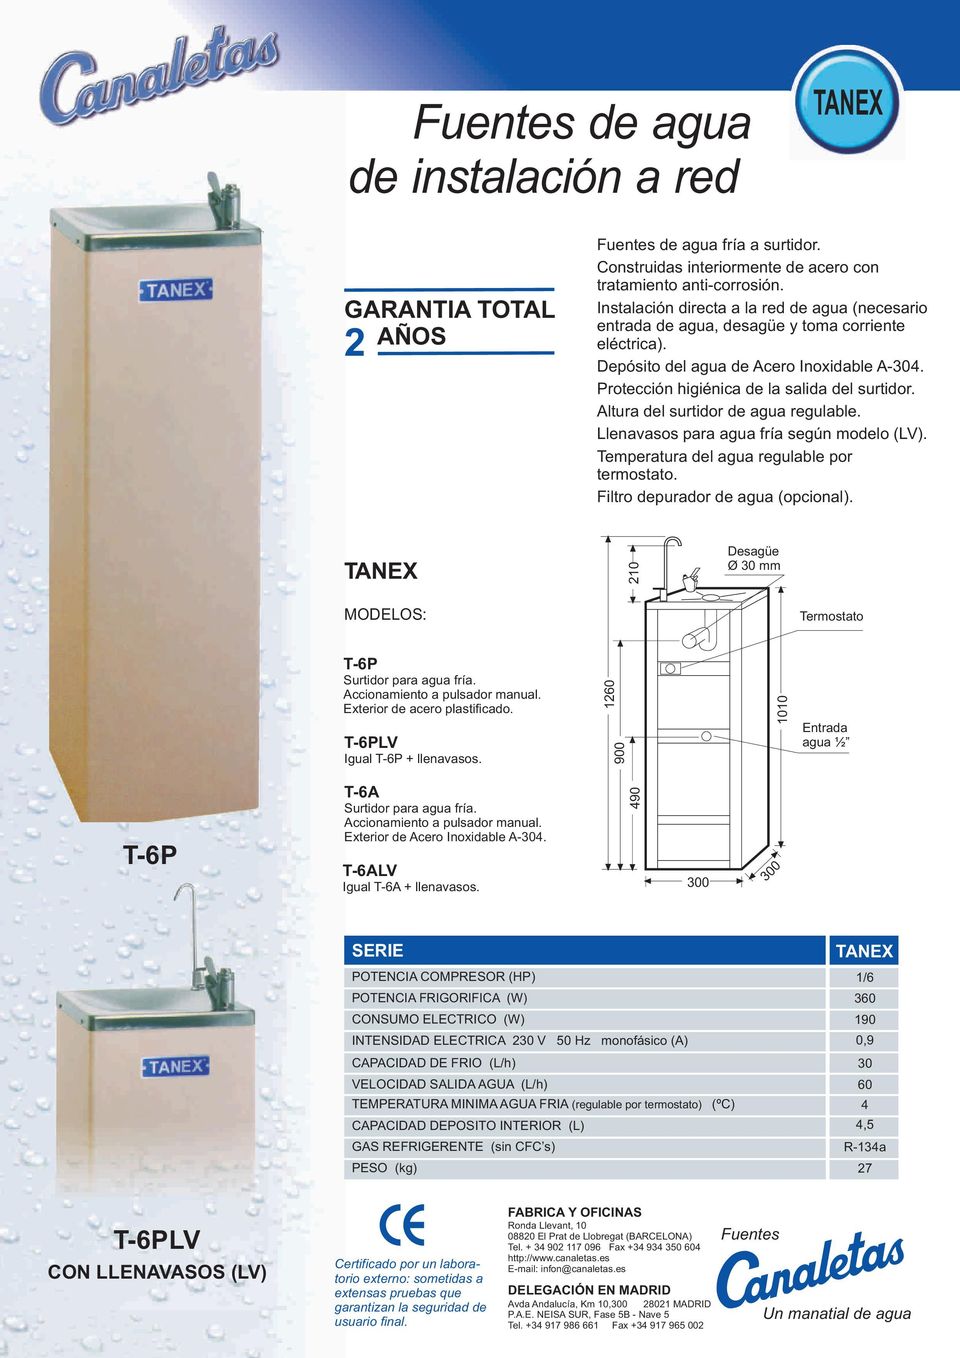 Altura del surtidor de agua regulable. Llenavasos para agua fría según modelo (LV). Temperatura del agua regulable por termostato. Filtro depurador de agua (opcional).